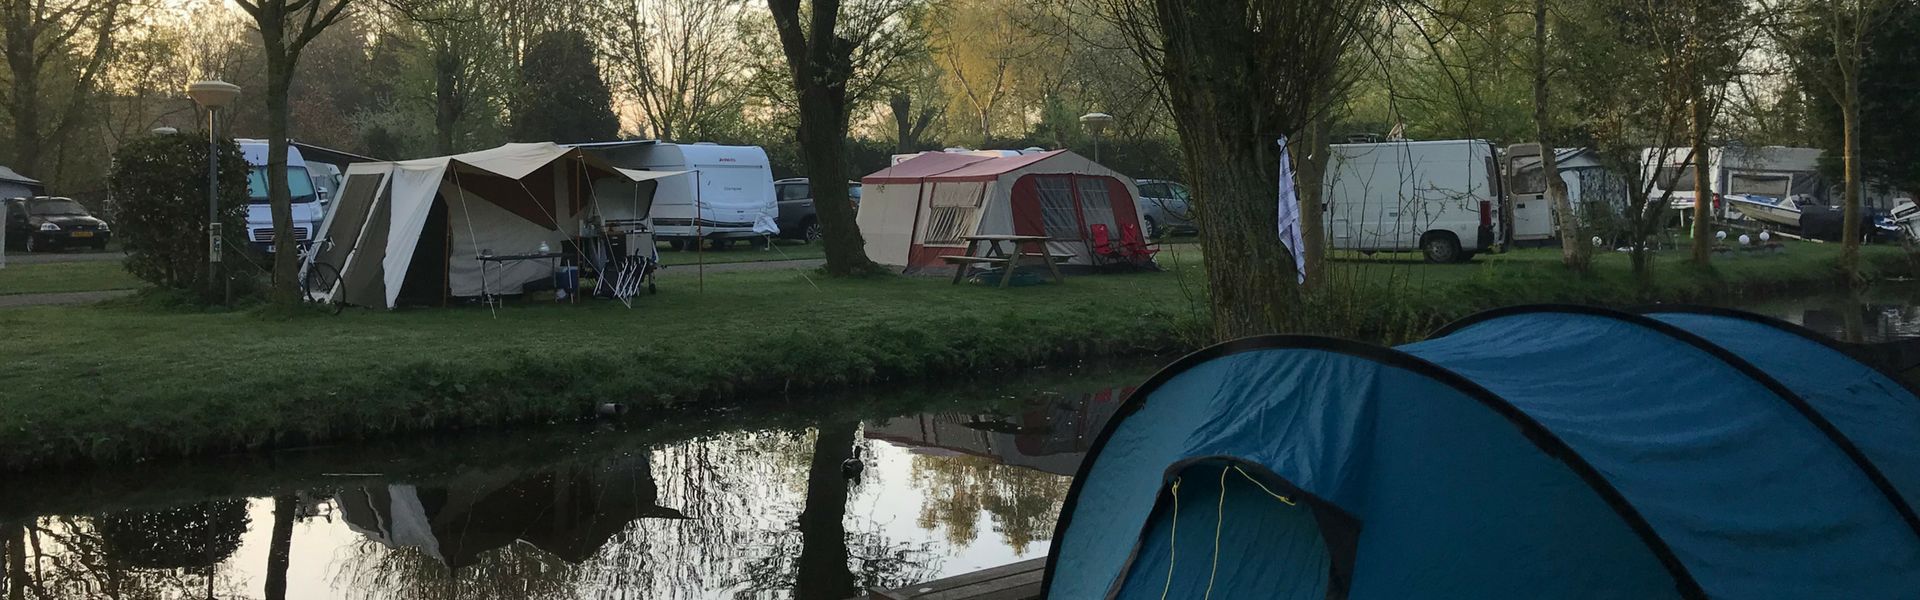 camping landsmeer